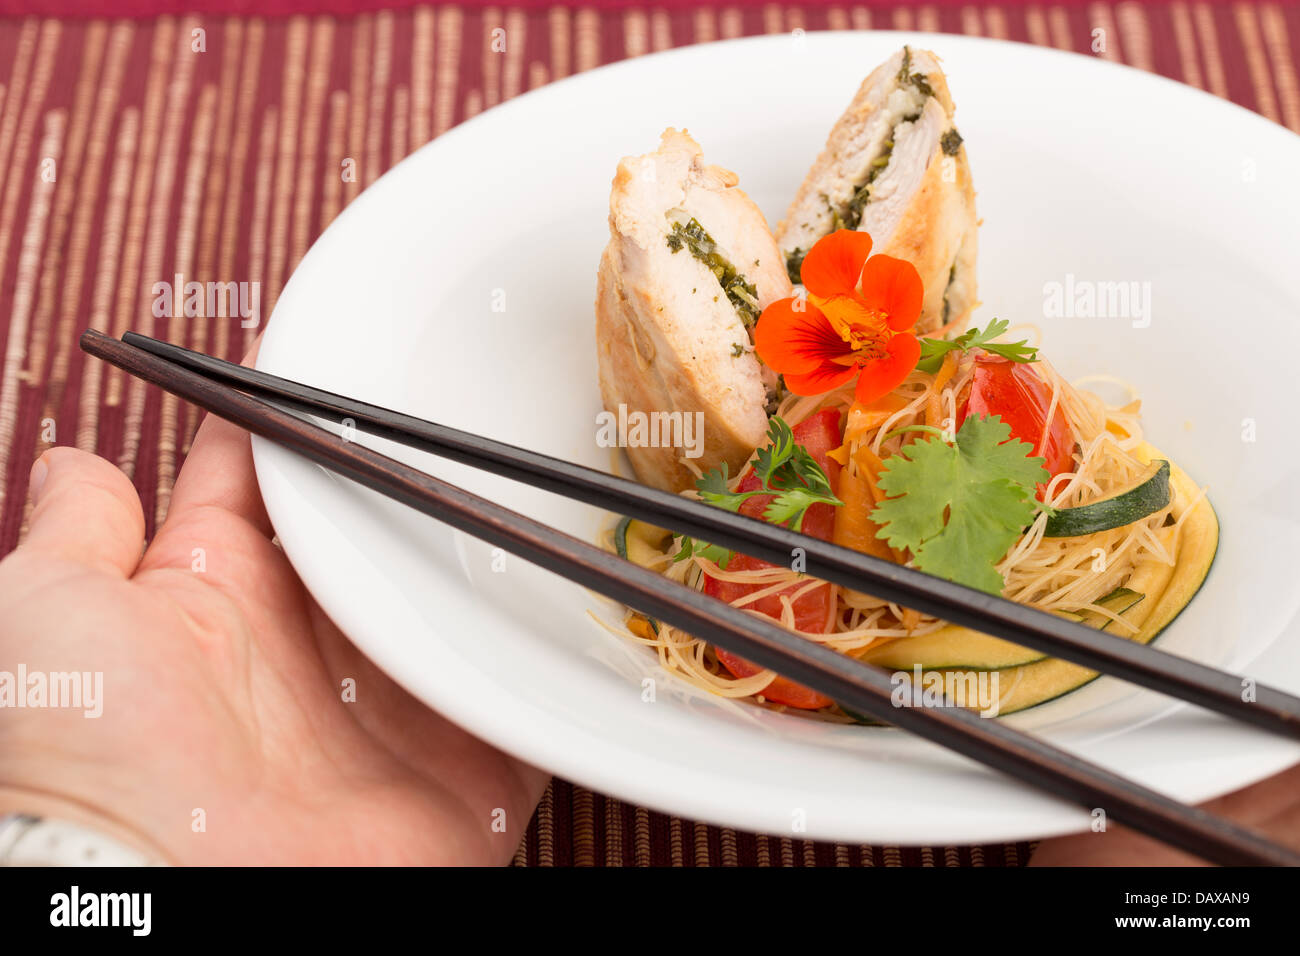 La cuisine asiatique avec des morceau de poulet farcies, les nouilles, les courgettes, les carottes et les tomates. Banque D'Images